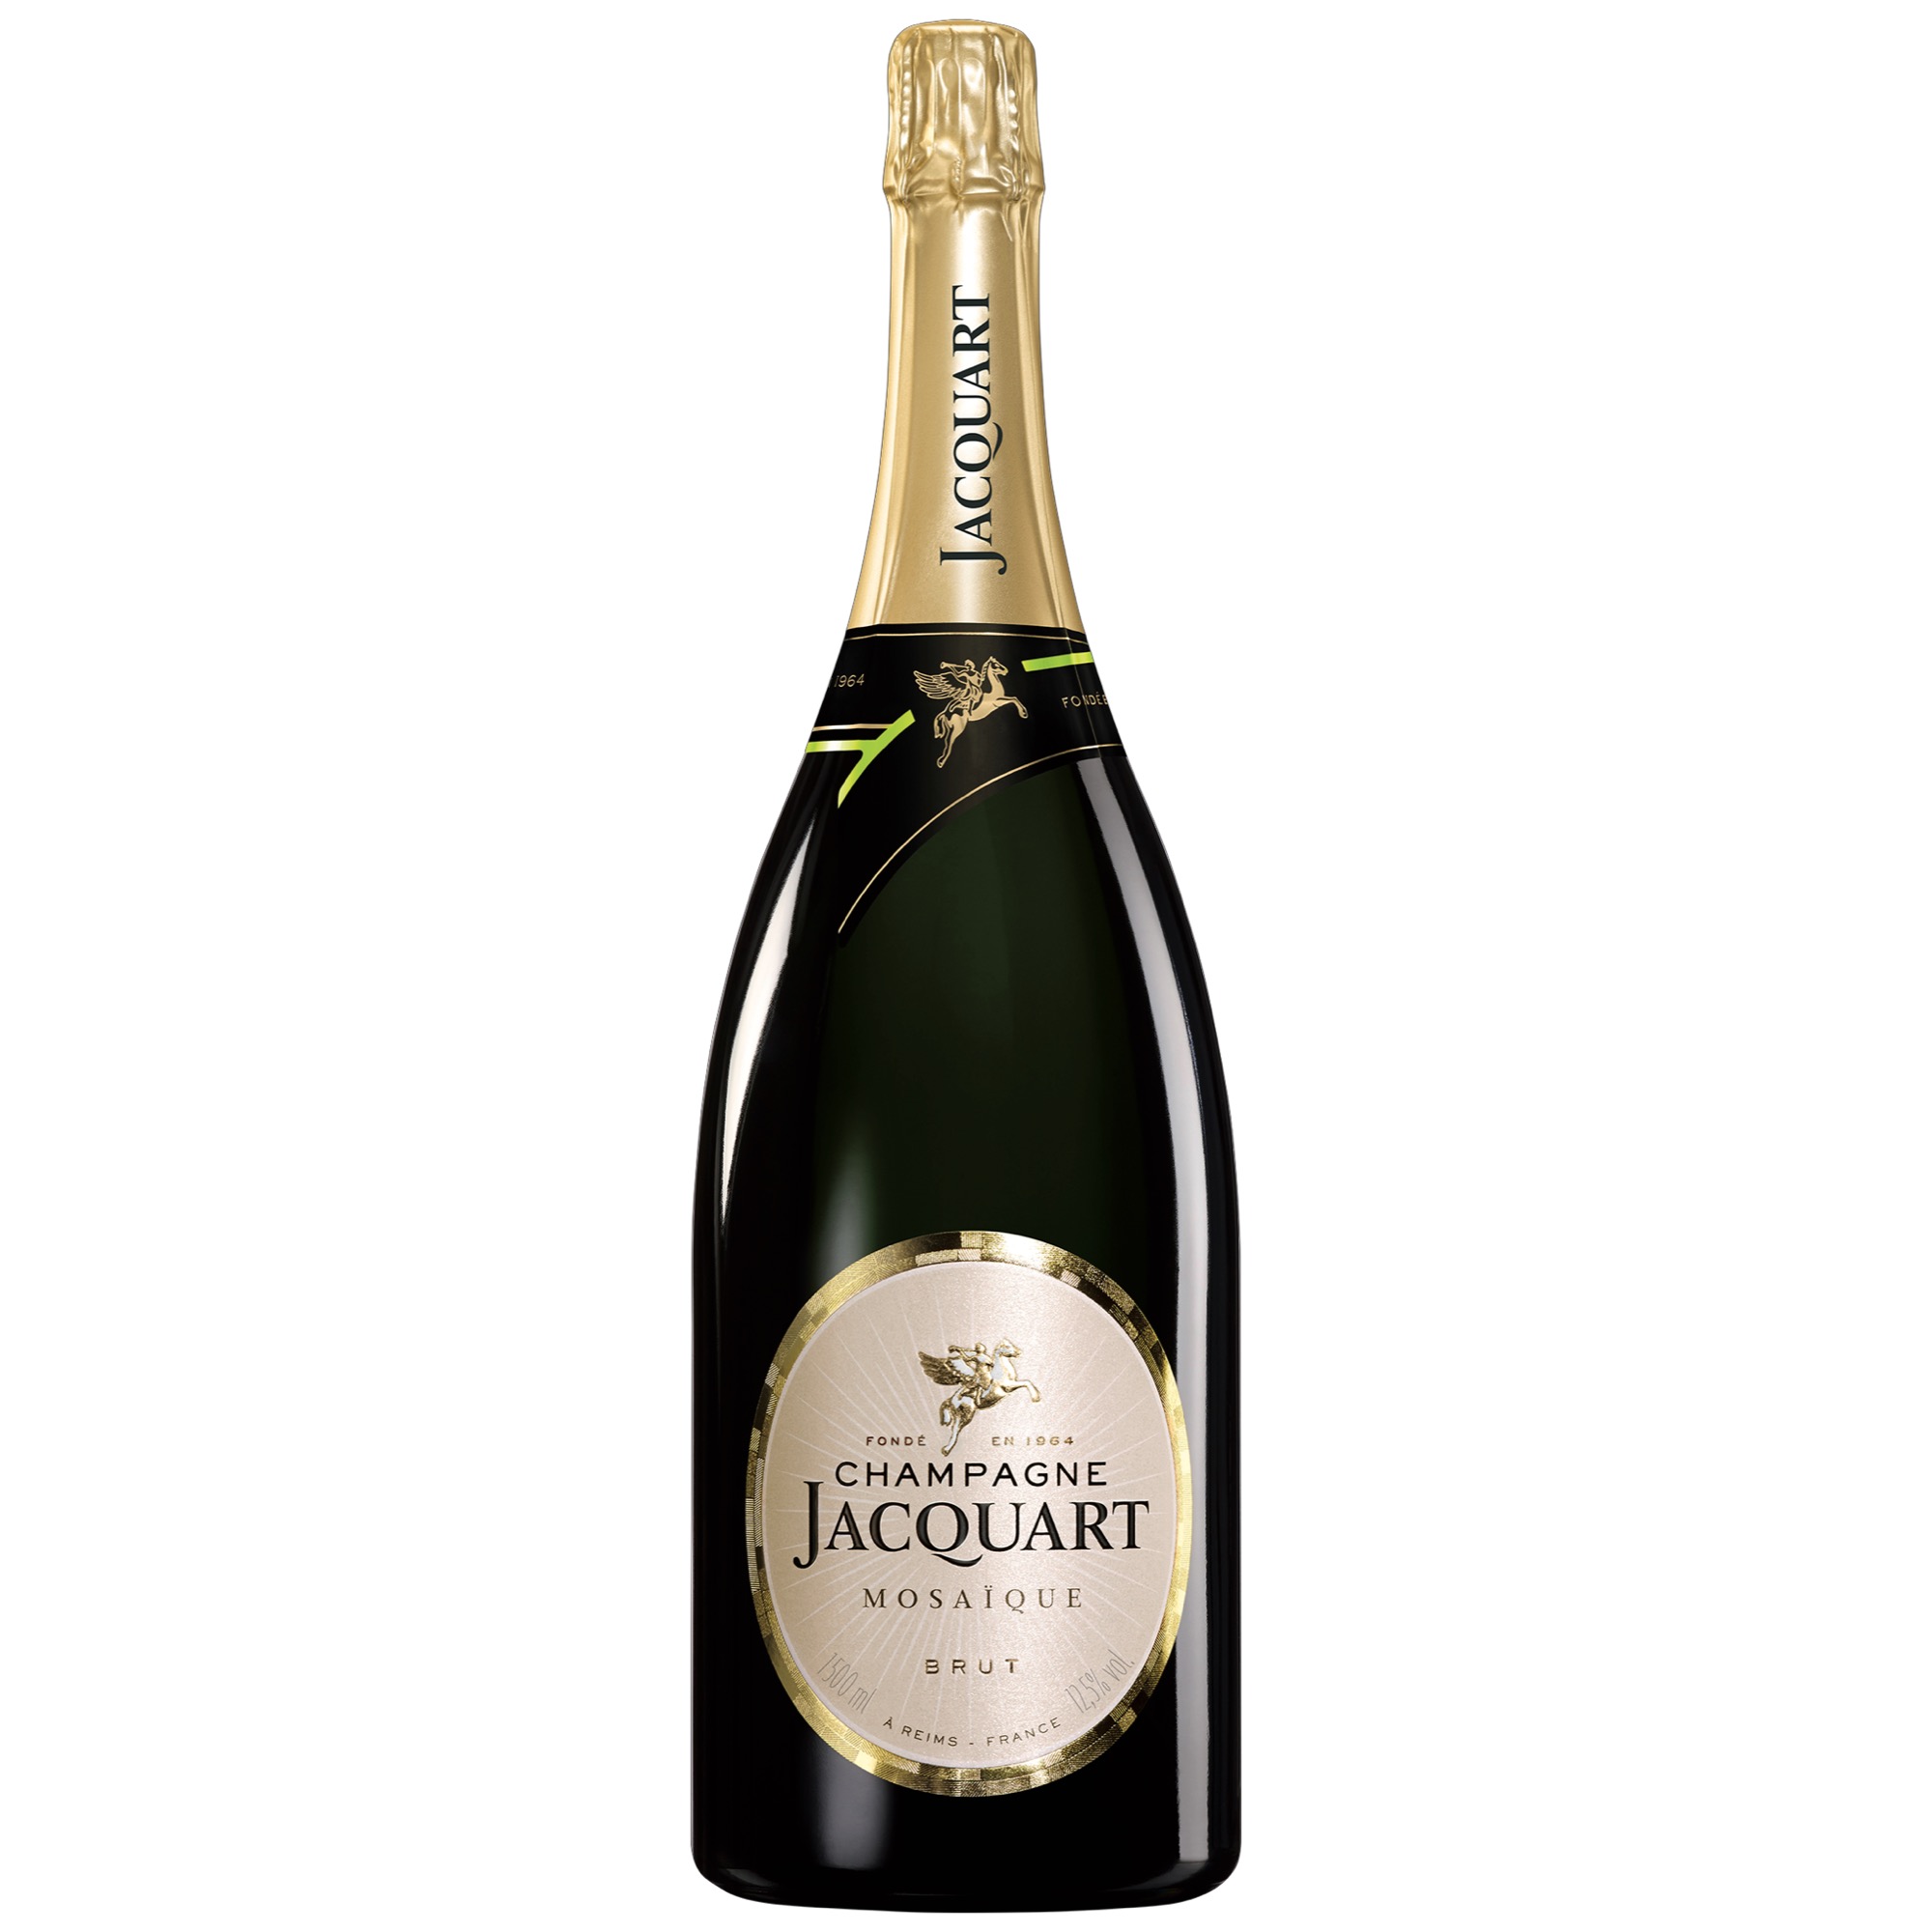 Jacquart Champagne Mosaique Brut GK 1,5l